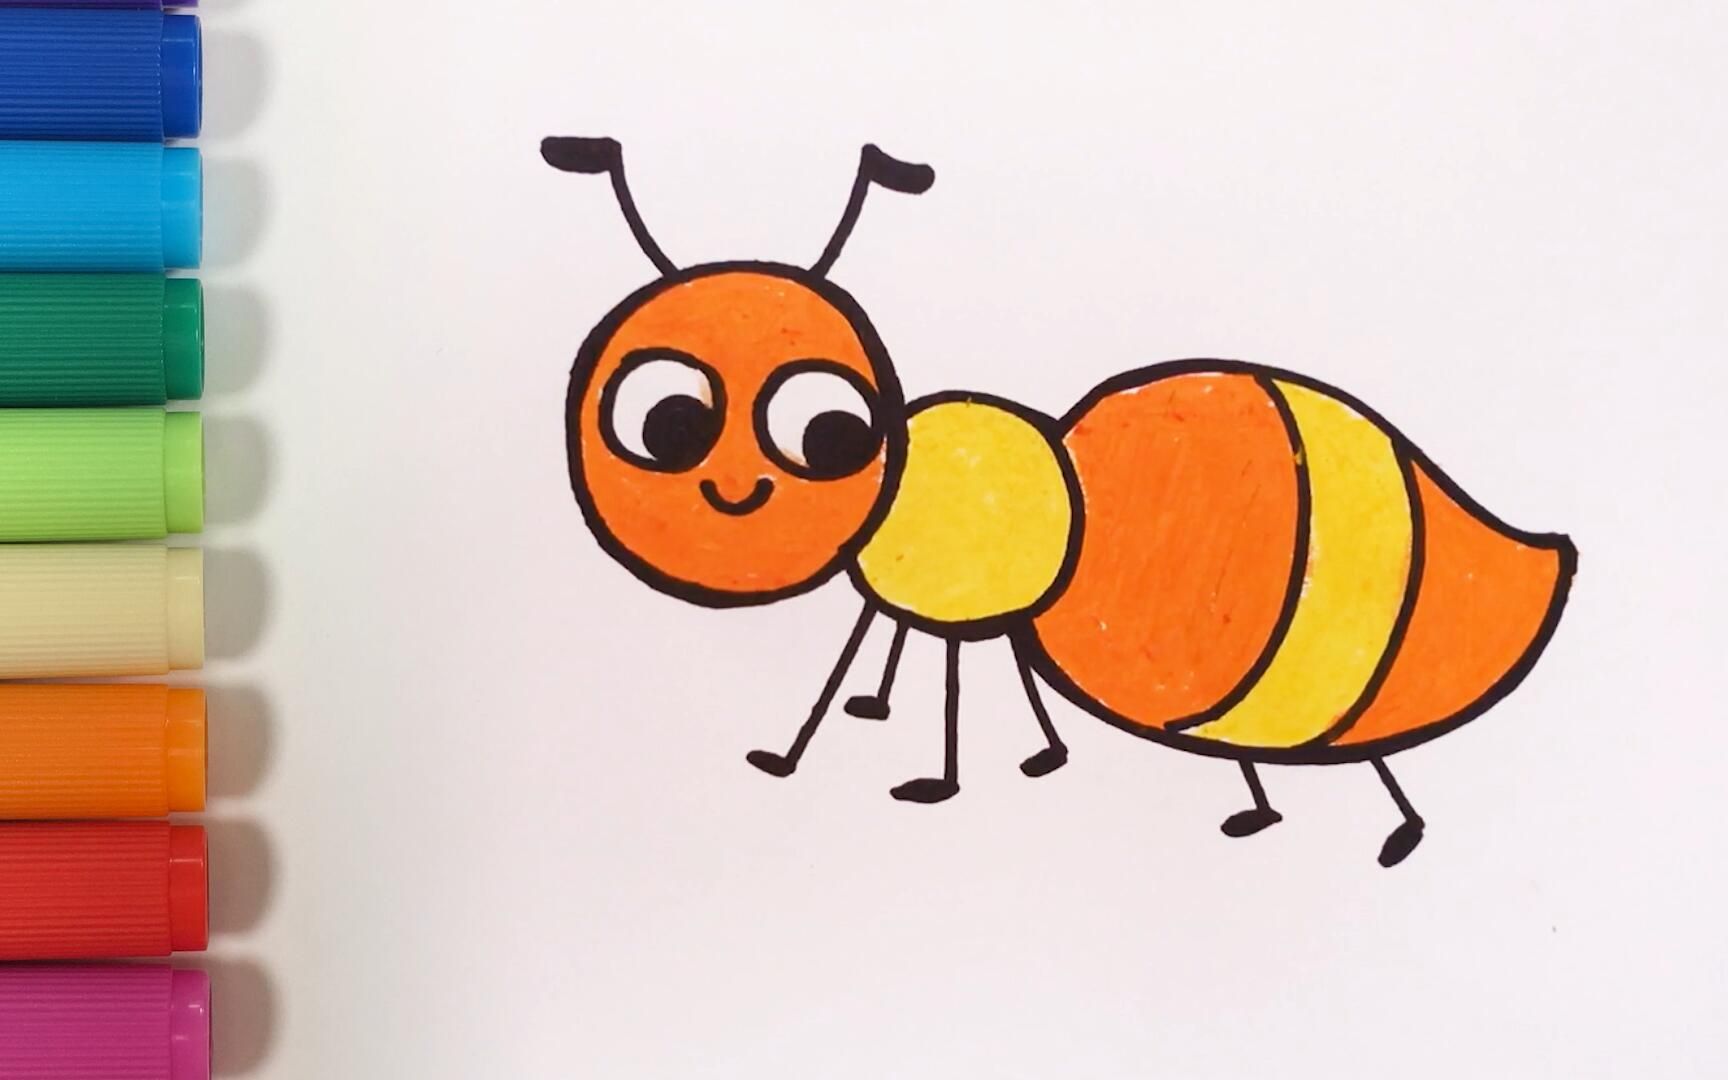 蚂蚁简笔画 简单 彩色图片